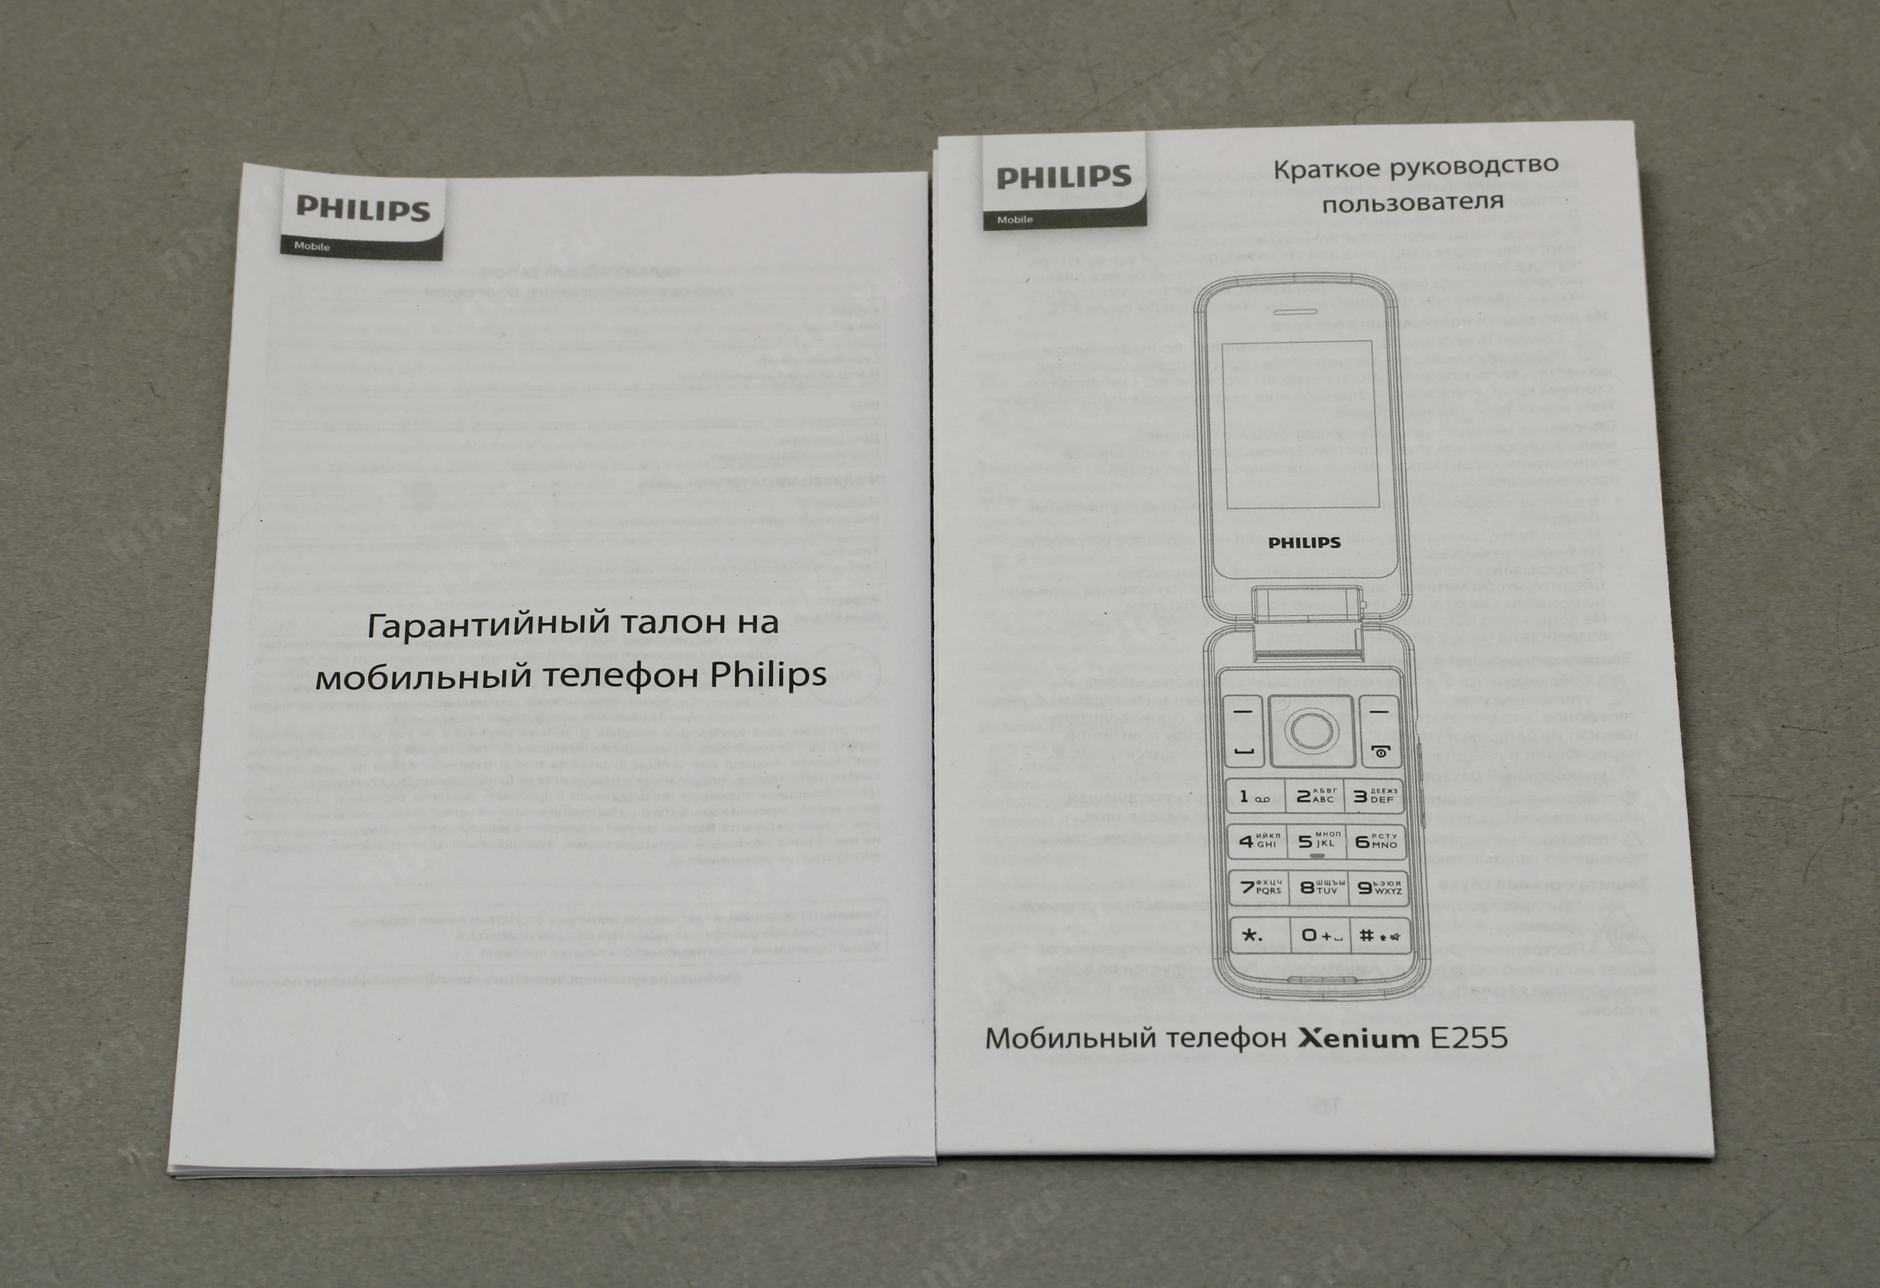 Телефон филипс значки. Philips Xenium e255 White. Xenium e255 коробка. Инструкция к телефону Philips. Схема телефона Philips Xenium.